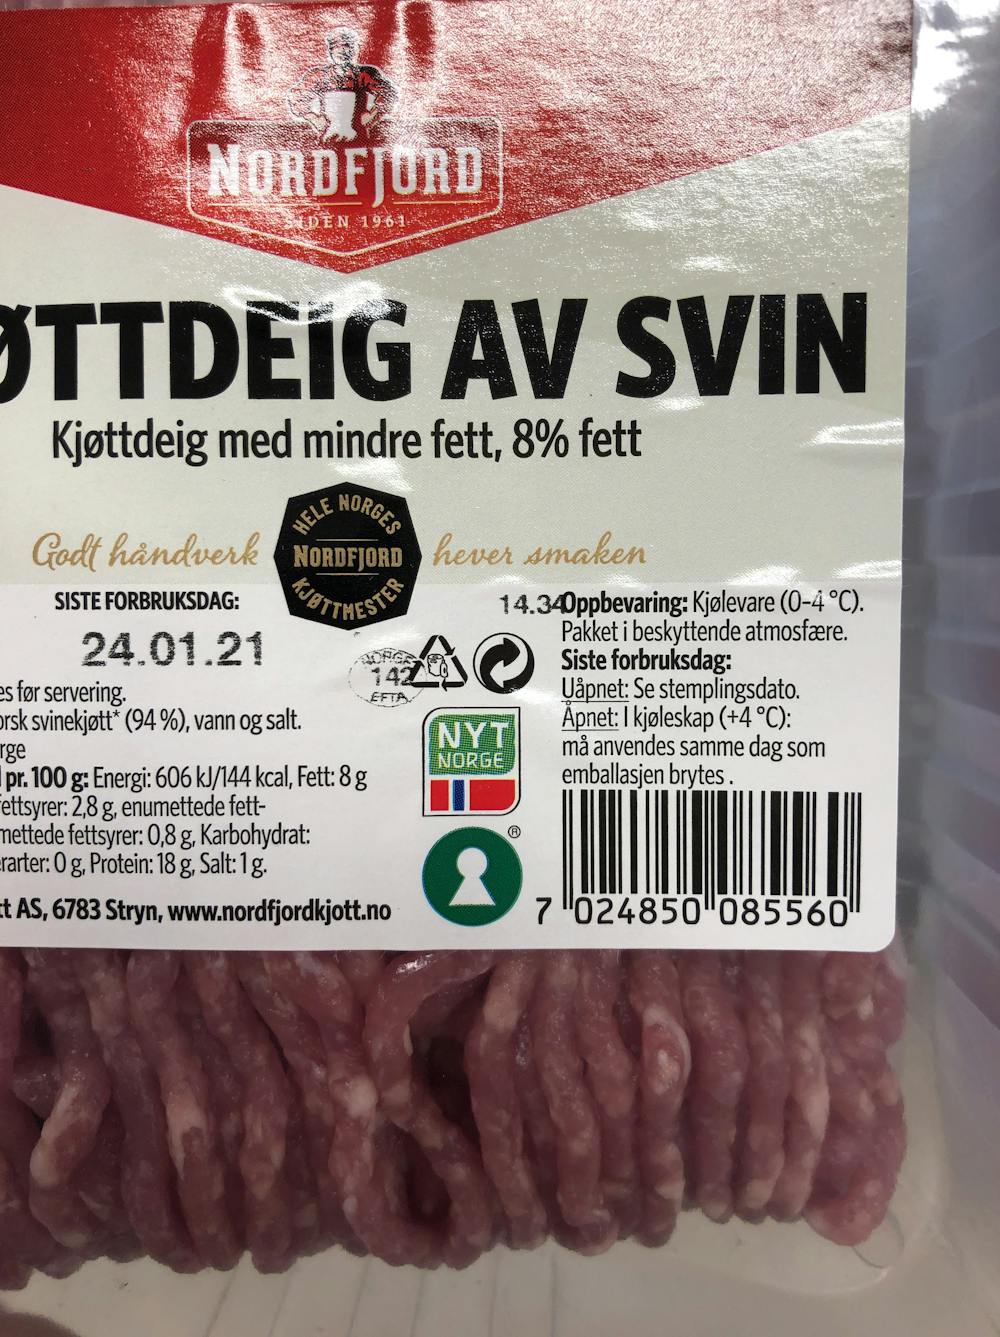 Kjøttdeig av svin, Nordfjord